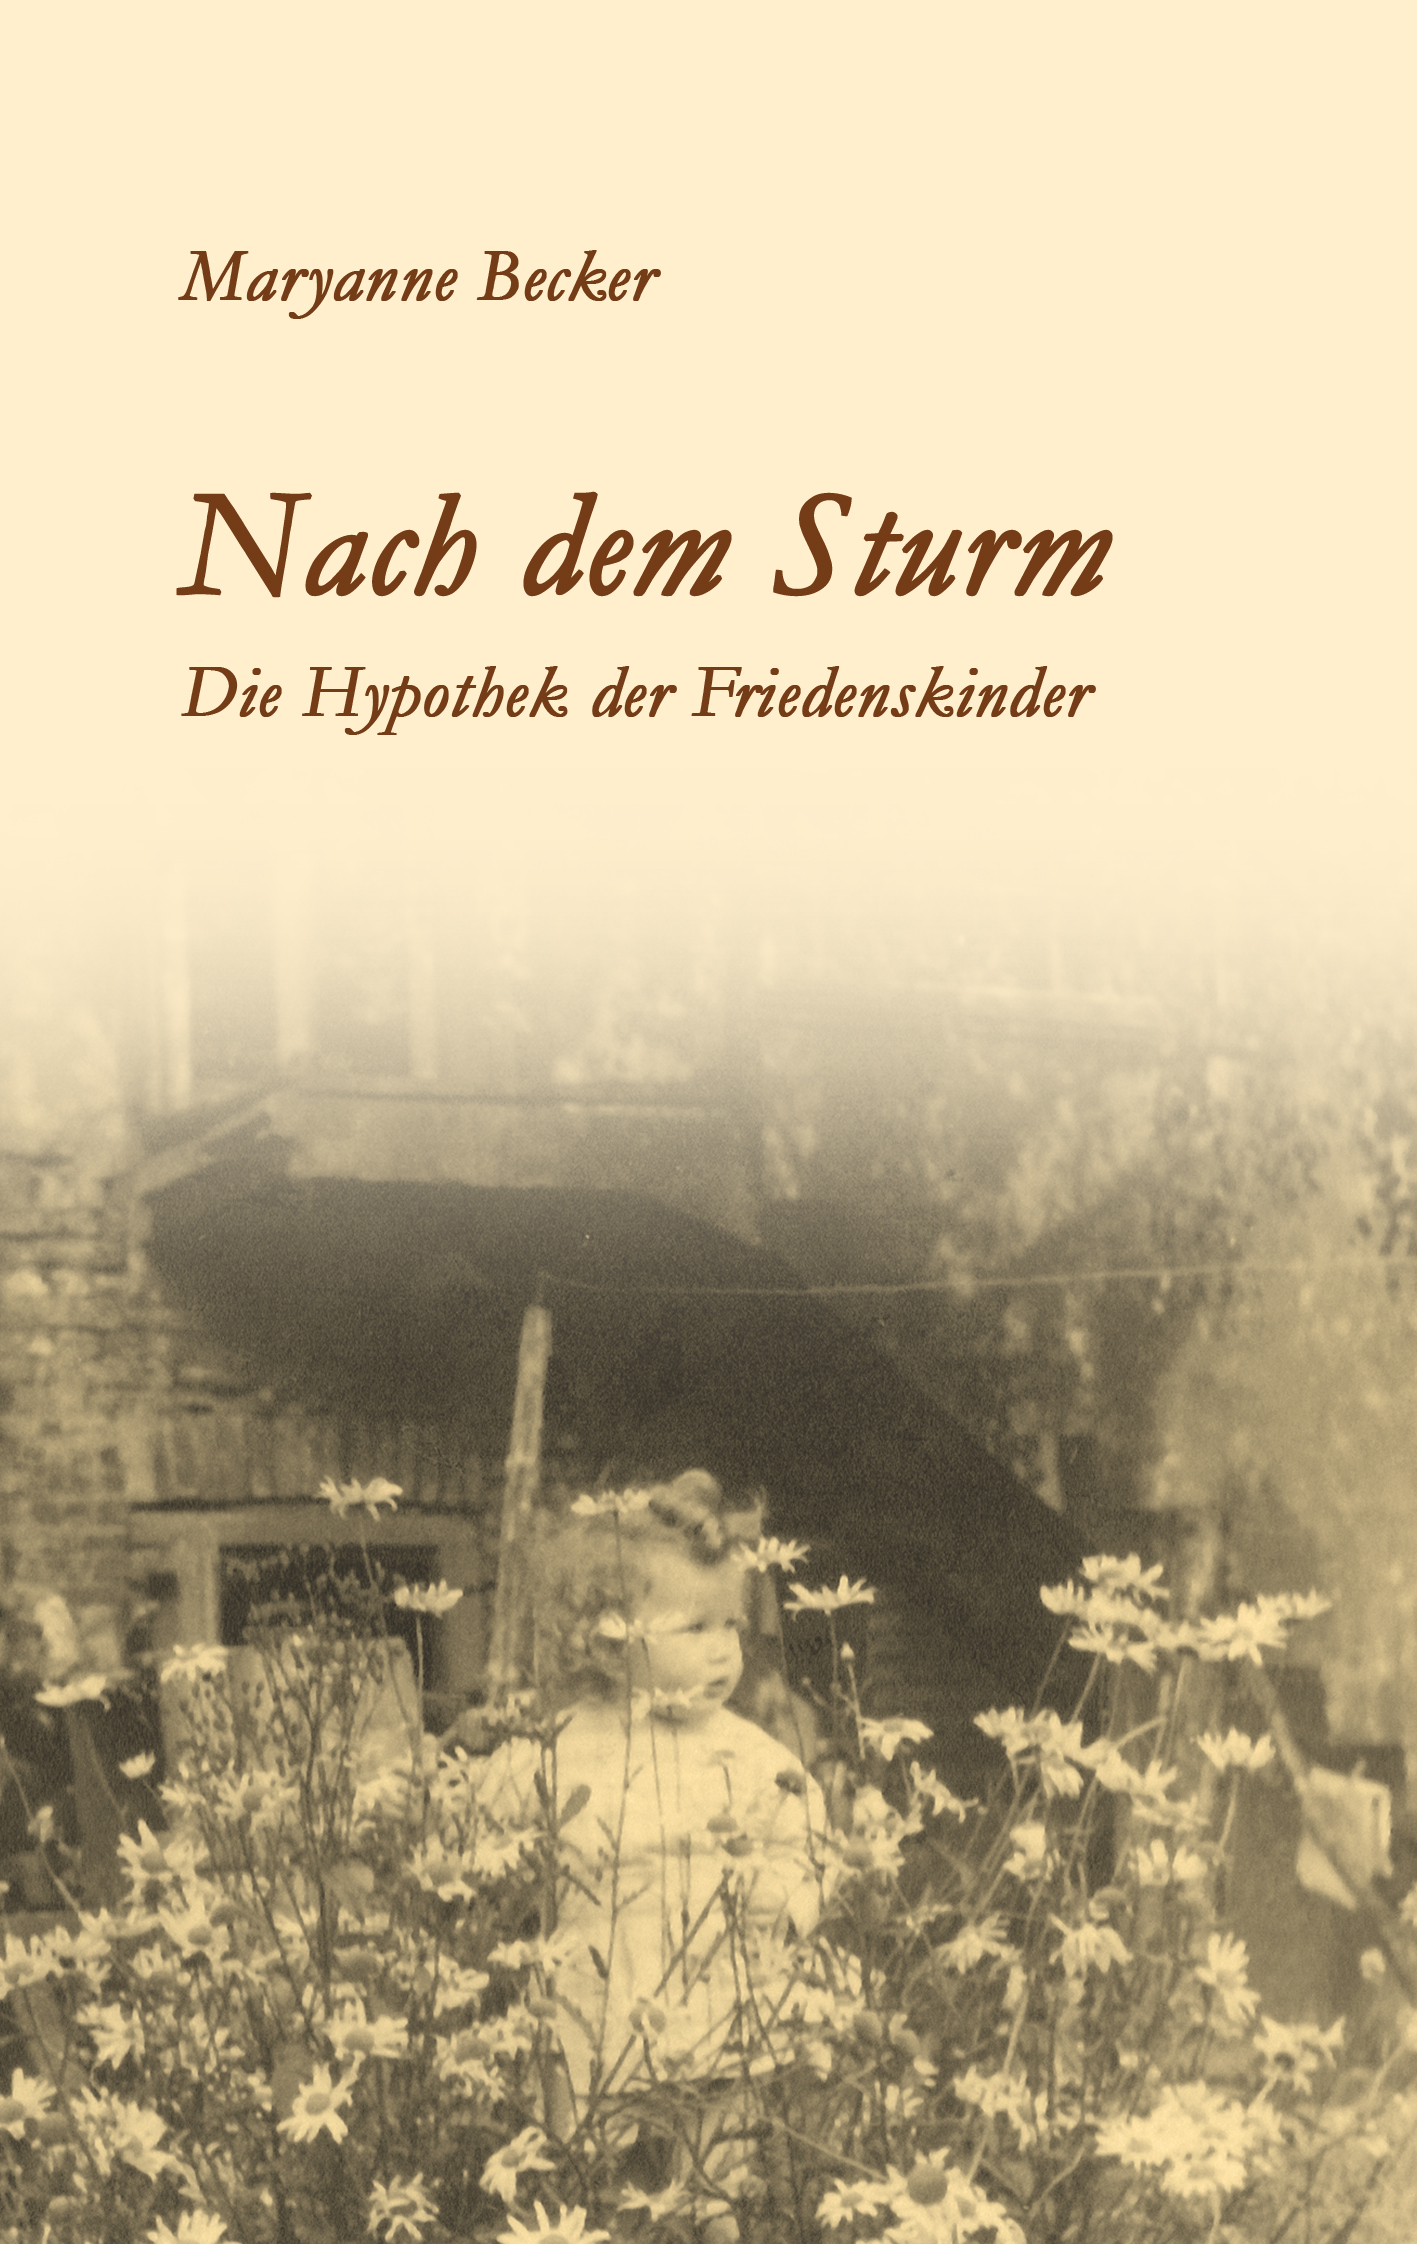 'Nach dem Sturm', Vordere Umschlagseite des Buches